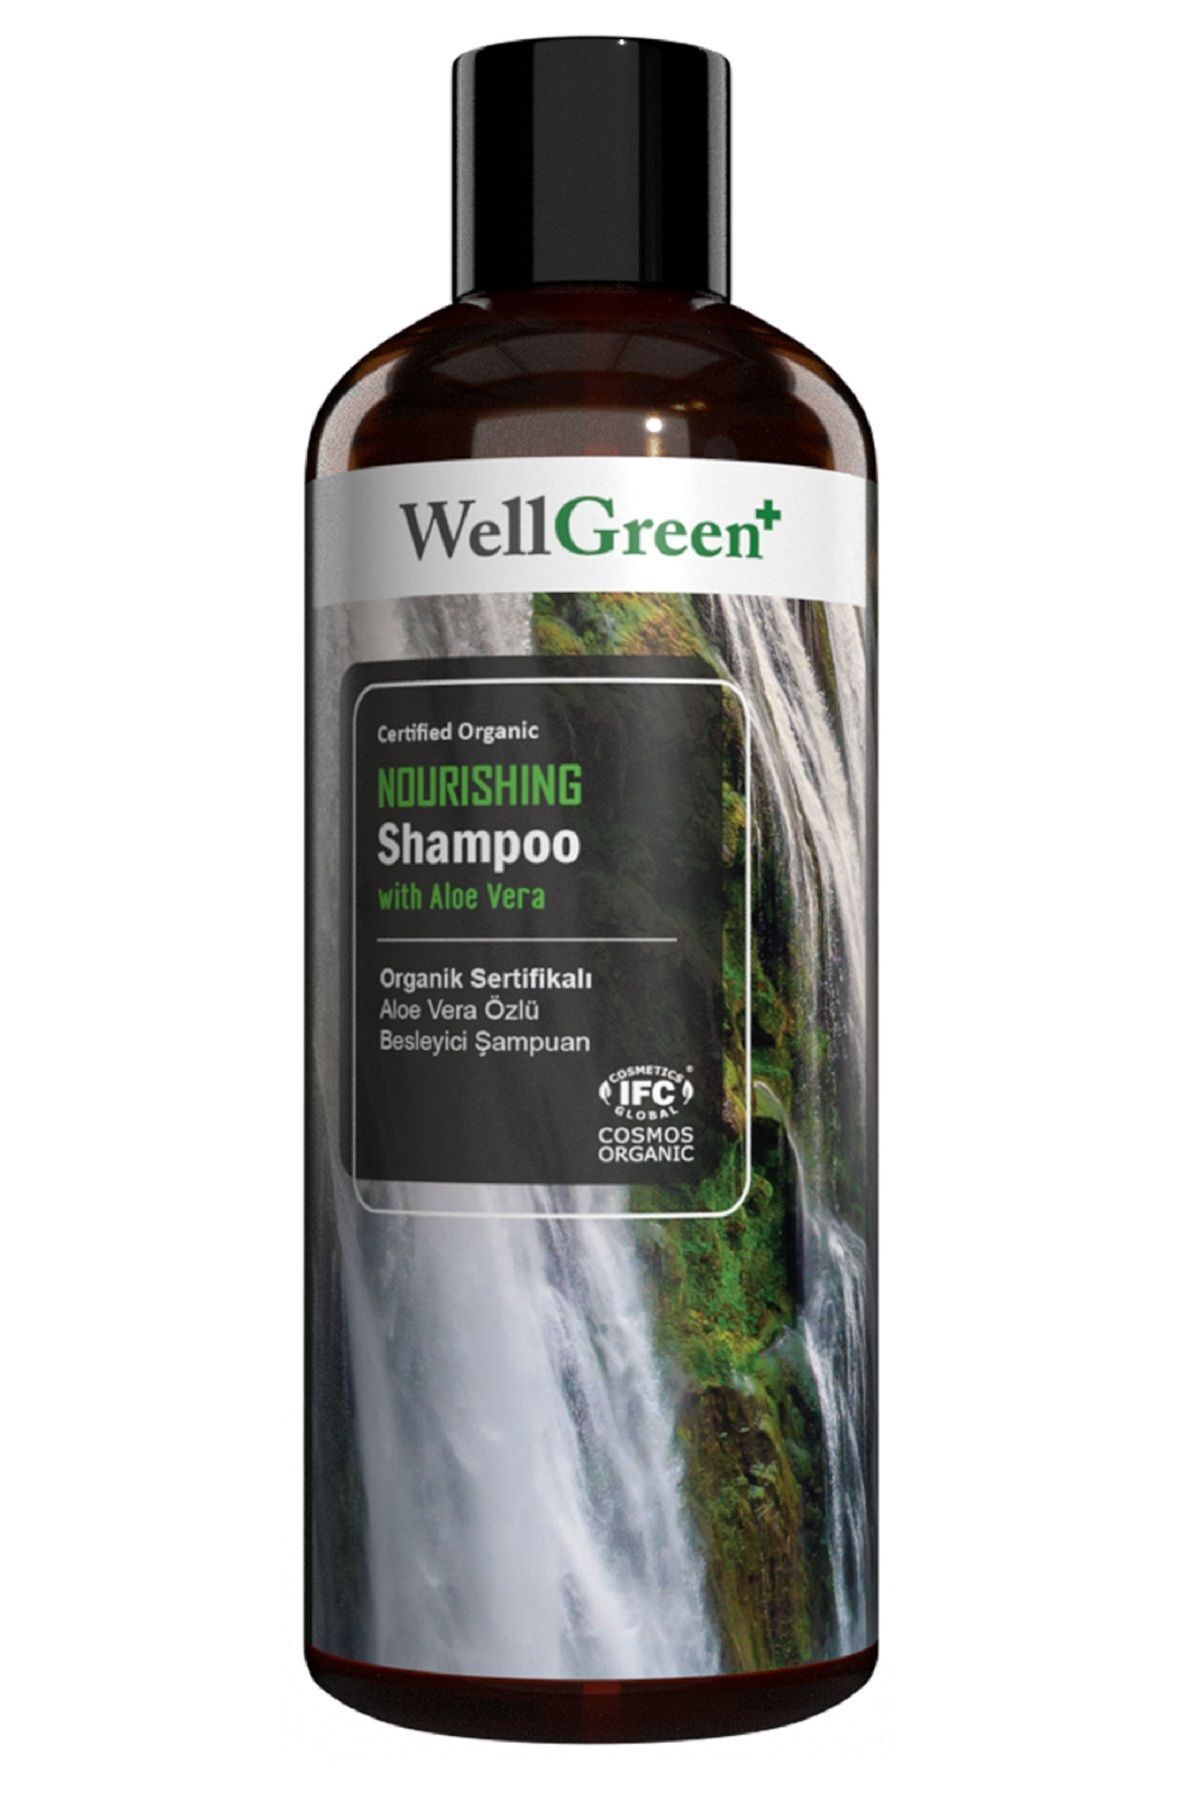 WellGreen Organik Sertifikalı Aloe Vera Özlü Besleyici Şampuan - 400ml